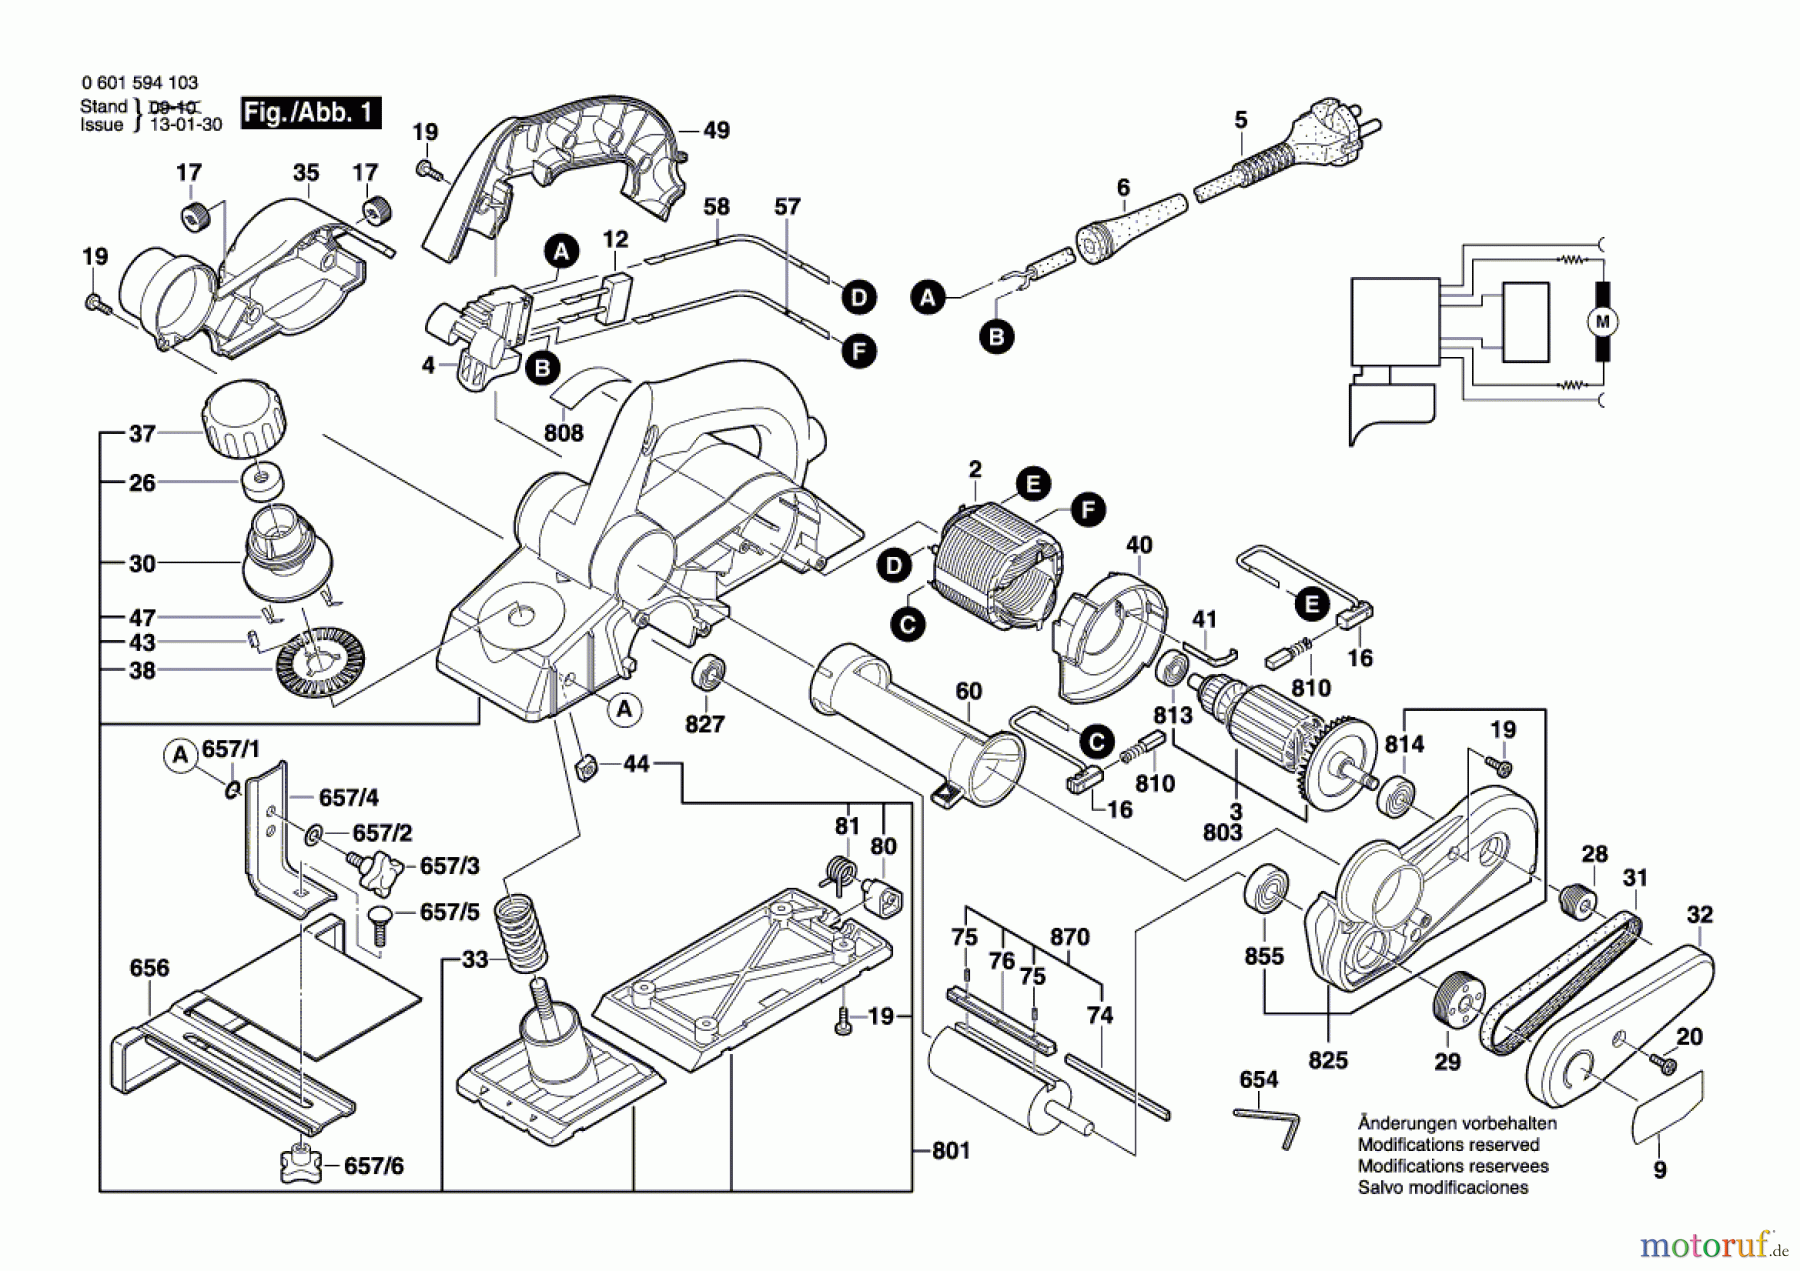  Bosch Werkzeug Handhobel GHO 26-82 Seite 1